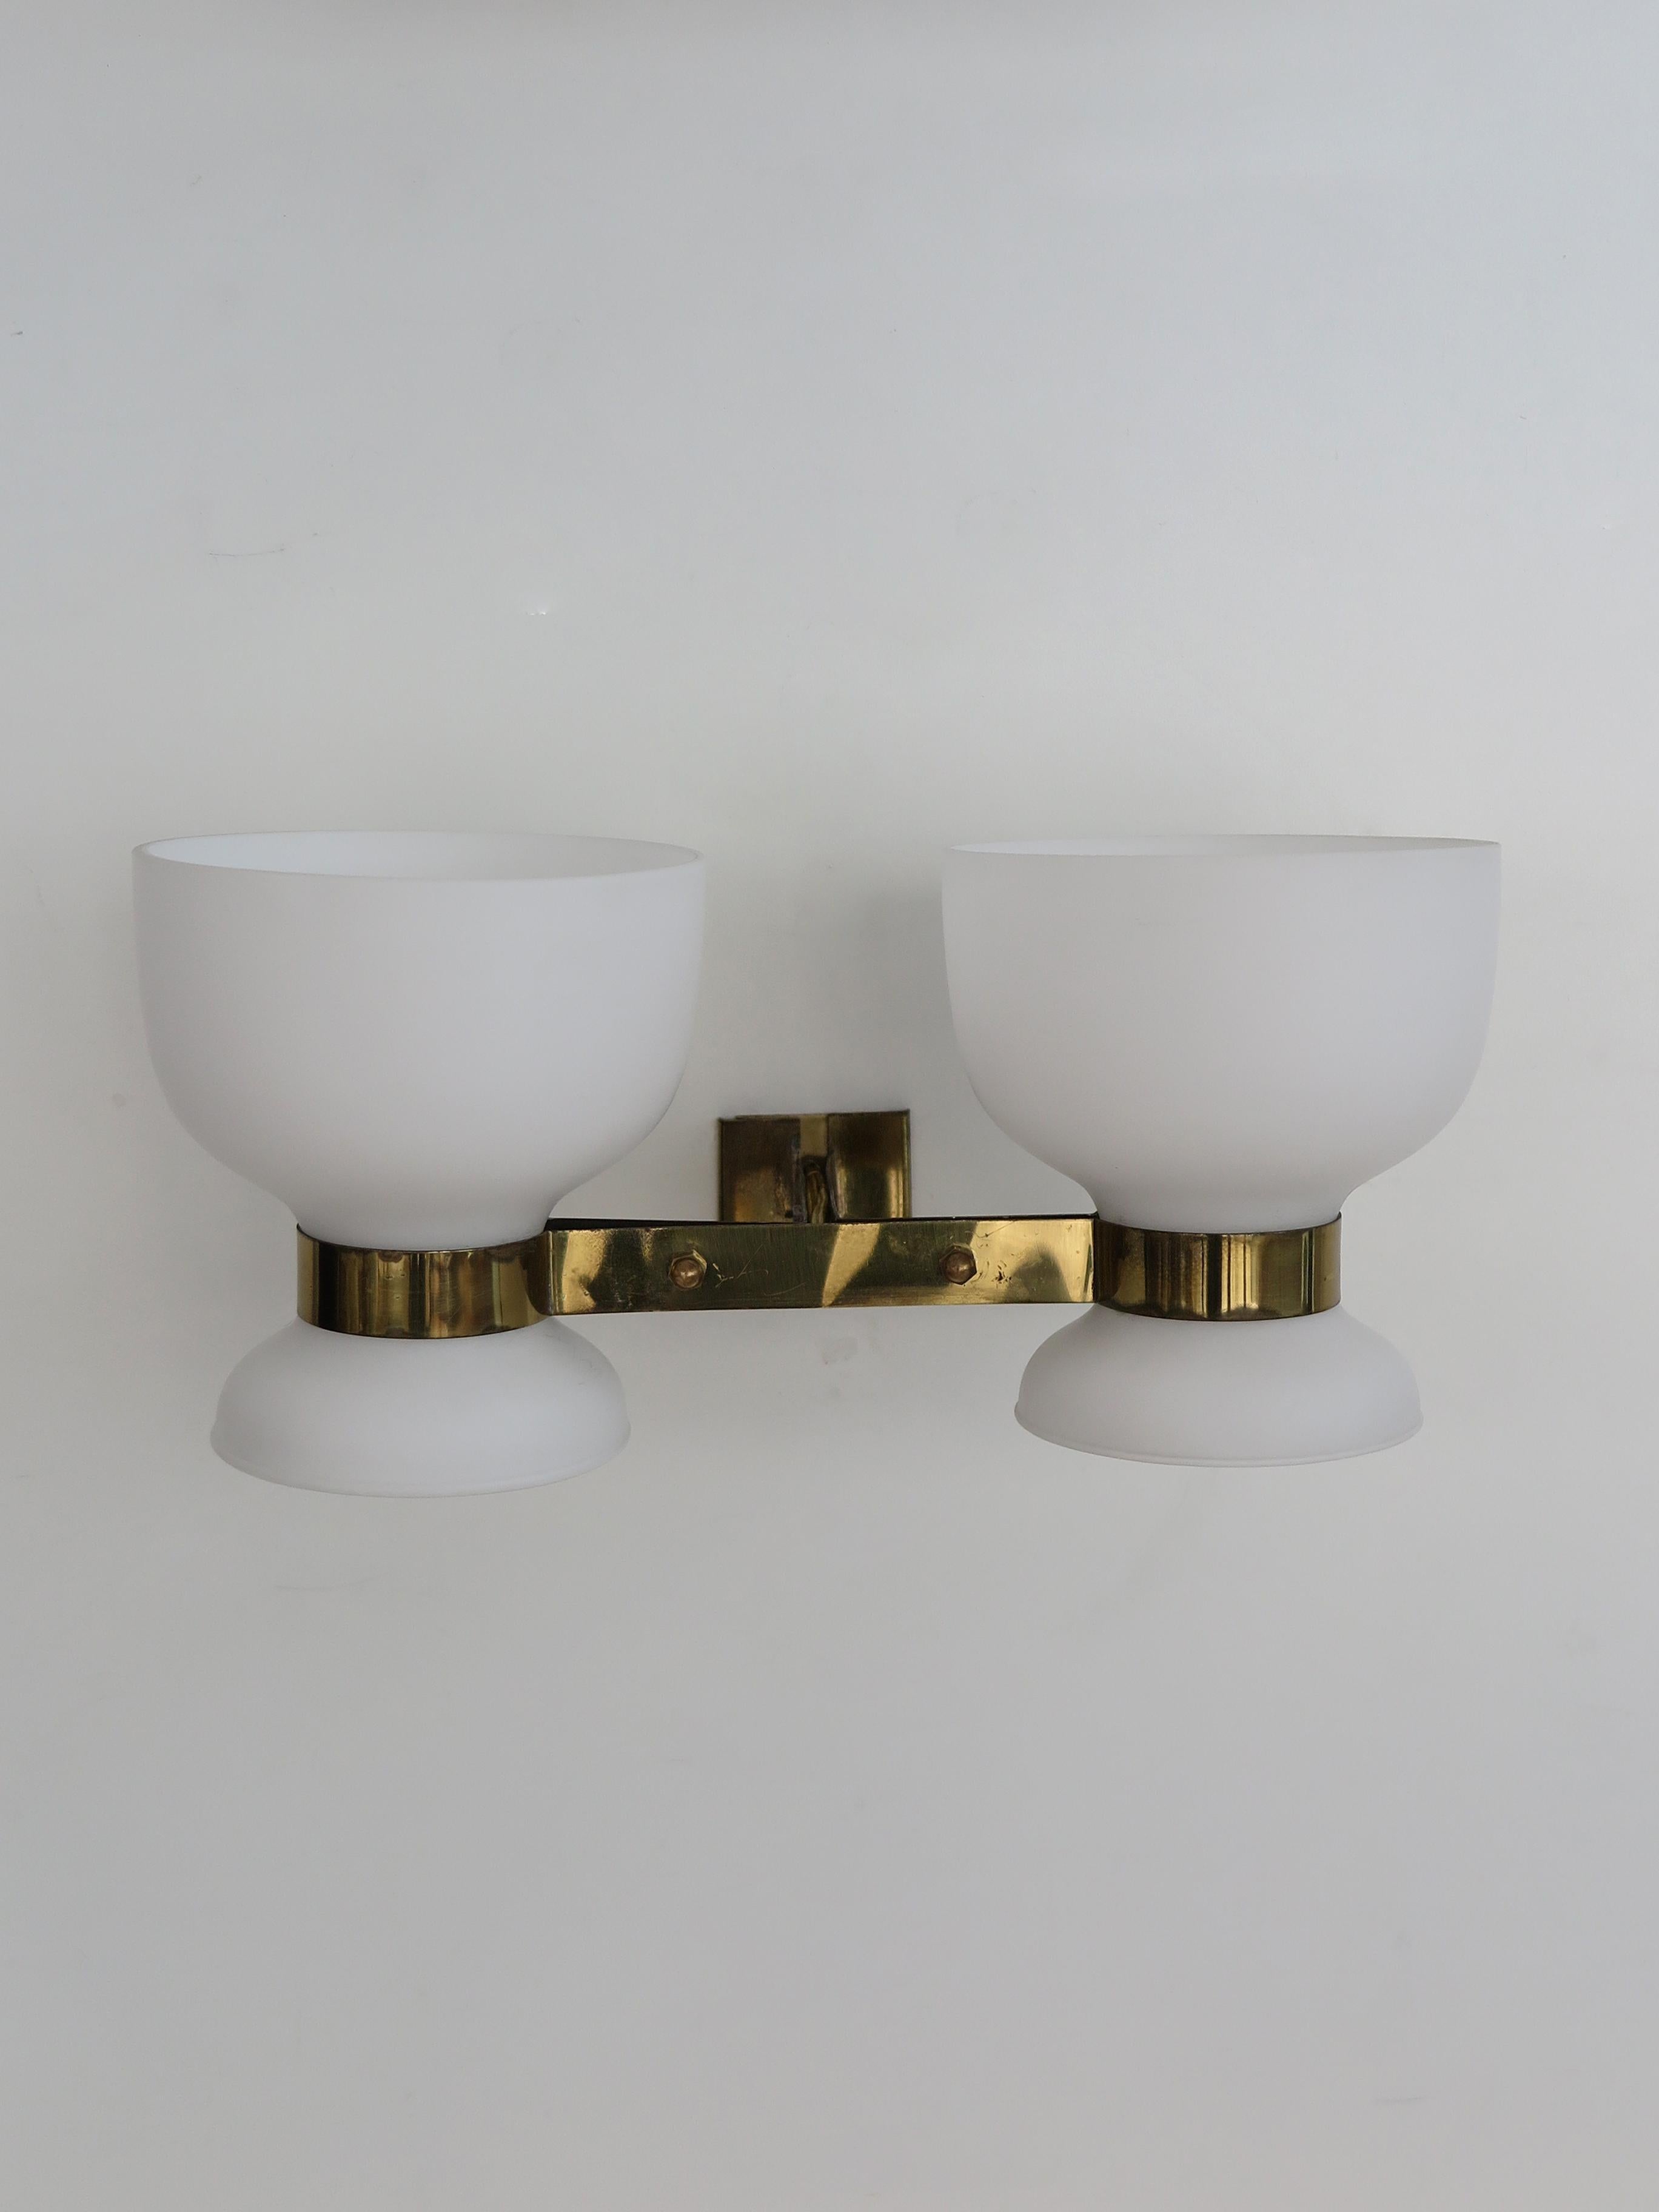 Stilnovo Italian Midcentury Modern Design Brass Glass Sconces Wall Lights 1950s For Sale 5